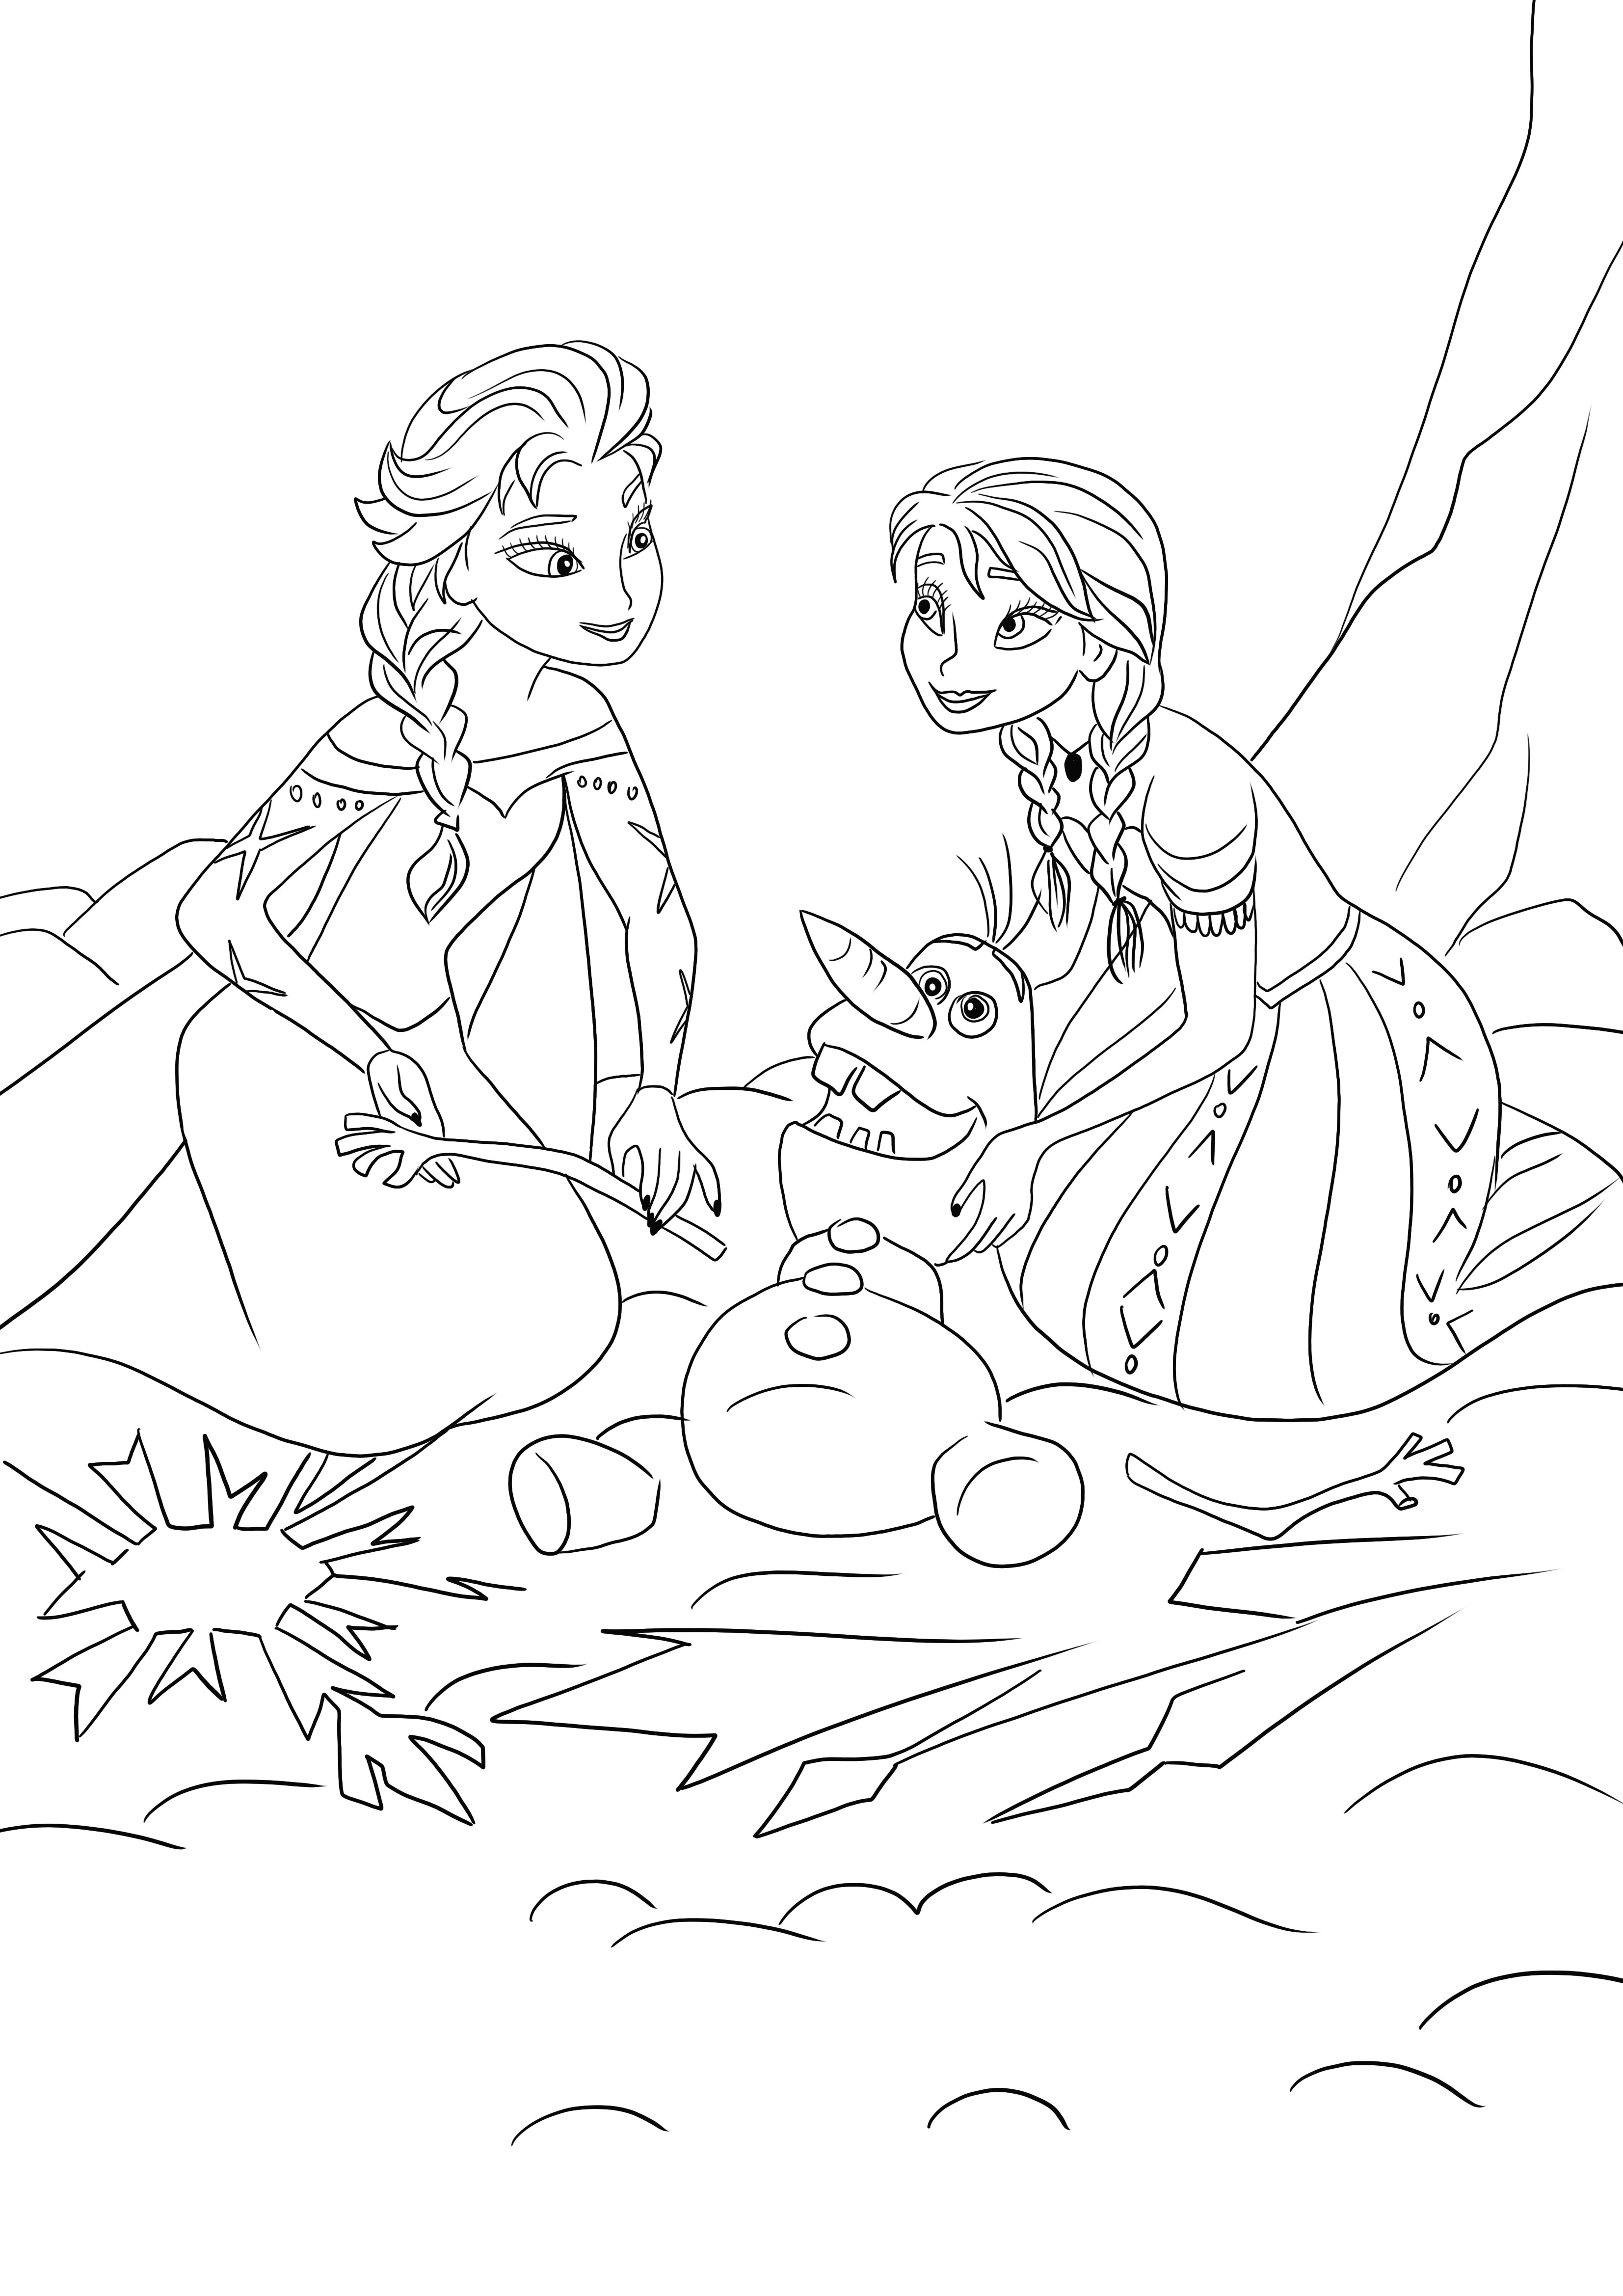 Elsa és Anna próbálja megmenteni az olvadó Olafot, ingyenesen letölthető és könnyen színezhető